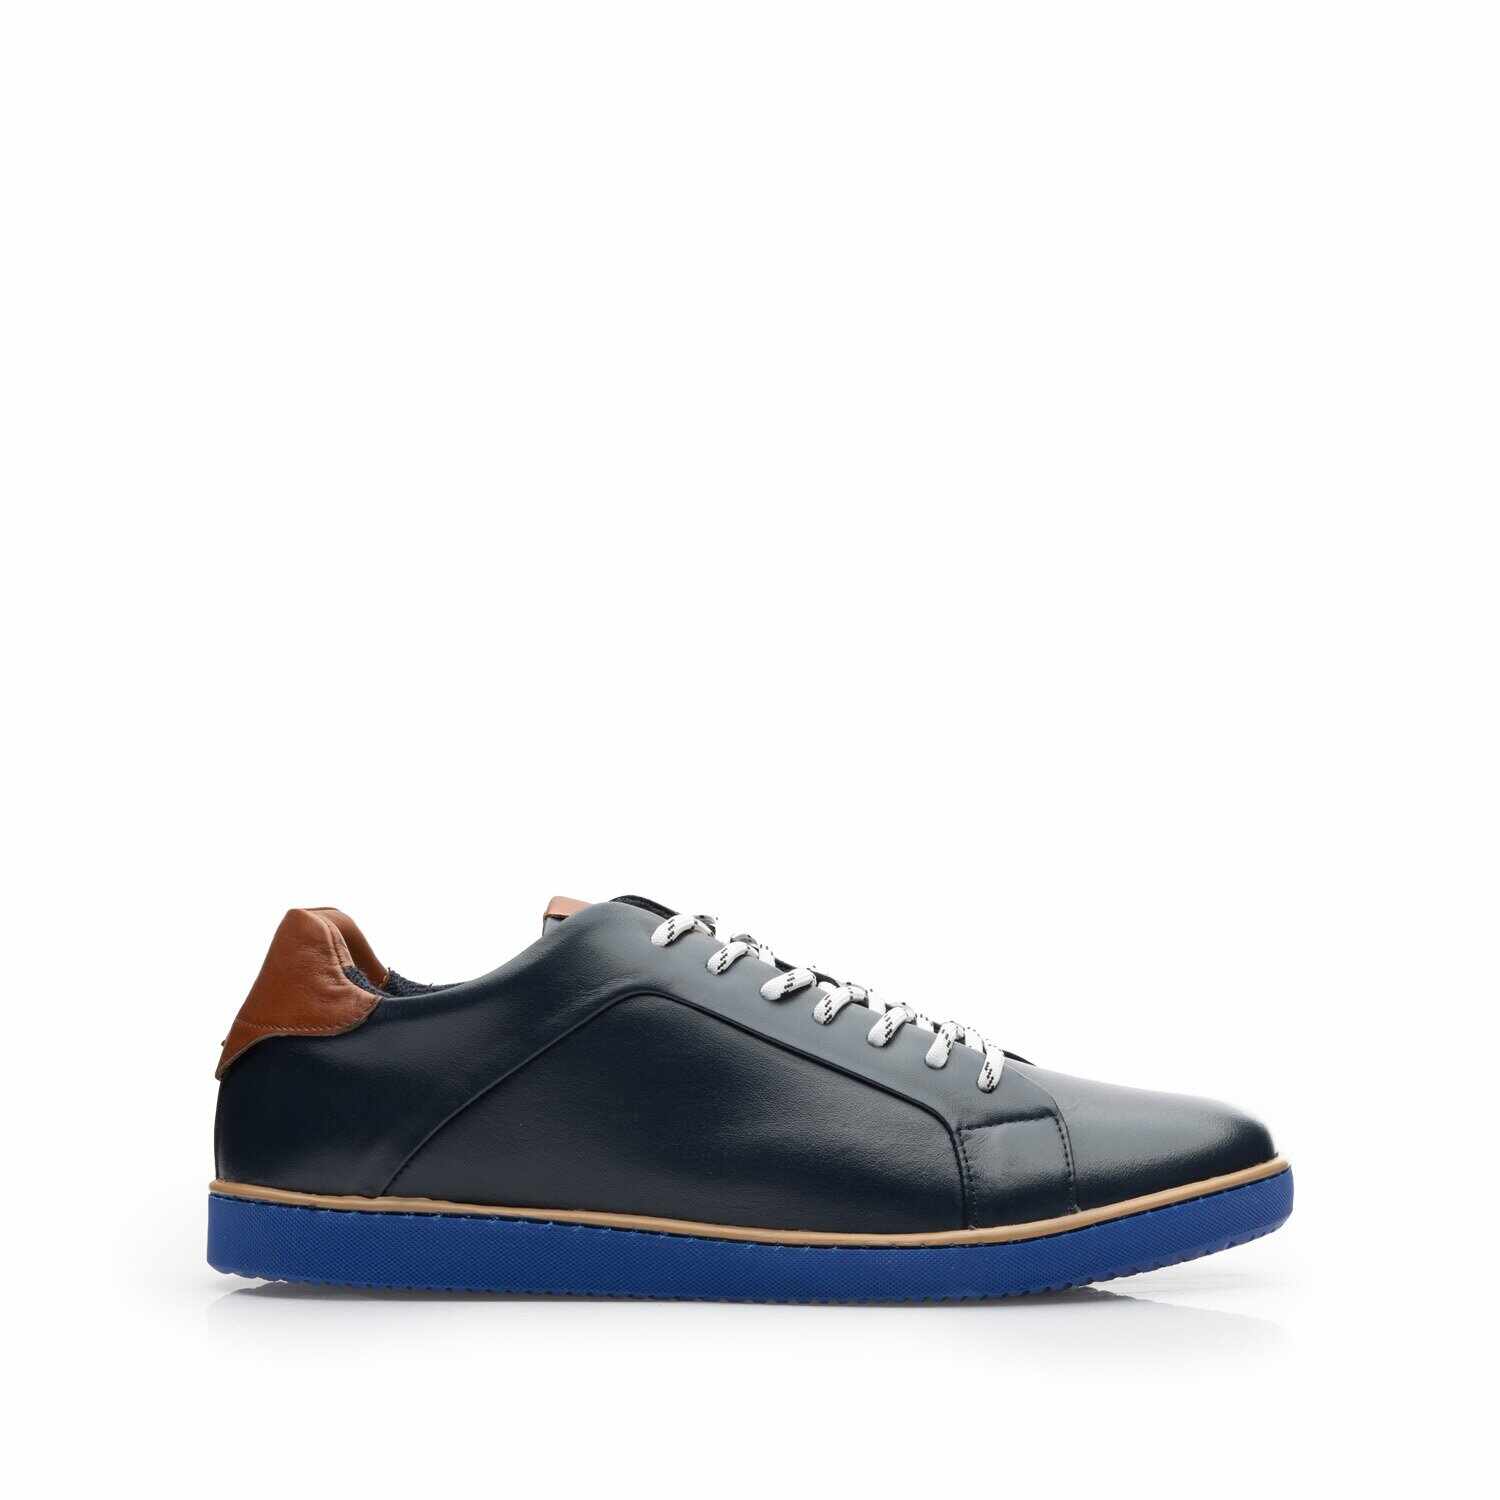 Pantofi sport bărbați din piele naturală, Leofex - Mostră 881-1 Blue box